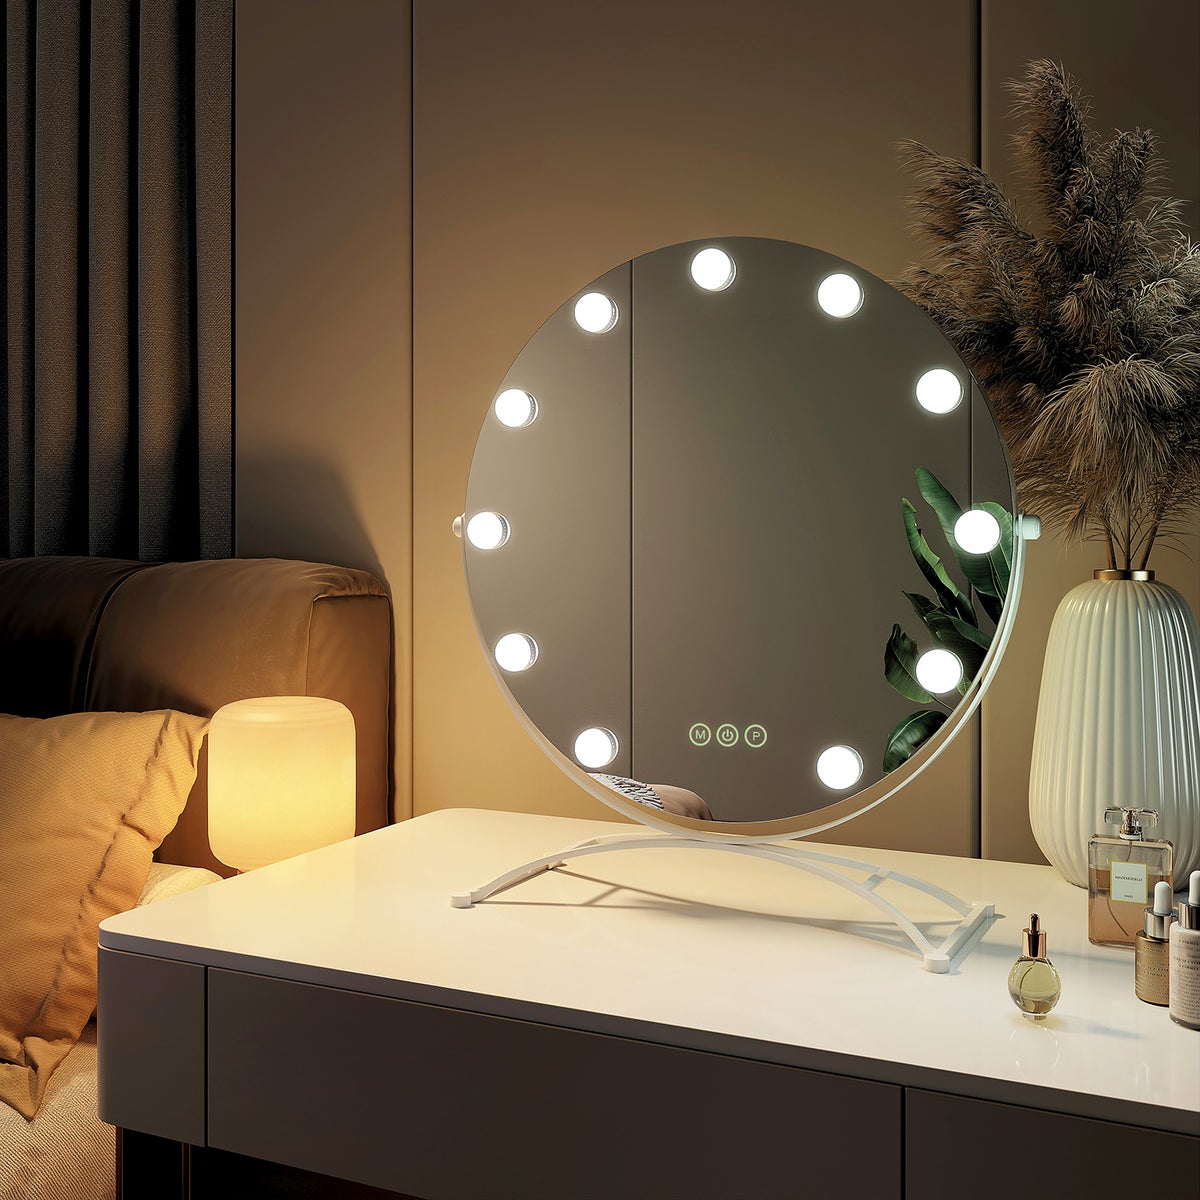 EMKE Runder Schminkspiegel Hollywood Spiegel mit Beleuchtung LED Tischspiegel, mit Touch, 3 Lichtfarben,11 Dimmbaren LED-Leuchtmitteln,7 x Vergrößerungsspiegel,Memory-Funktion, 360° Drehbar,Weiß,50 cm